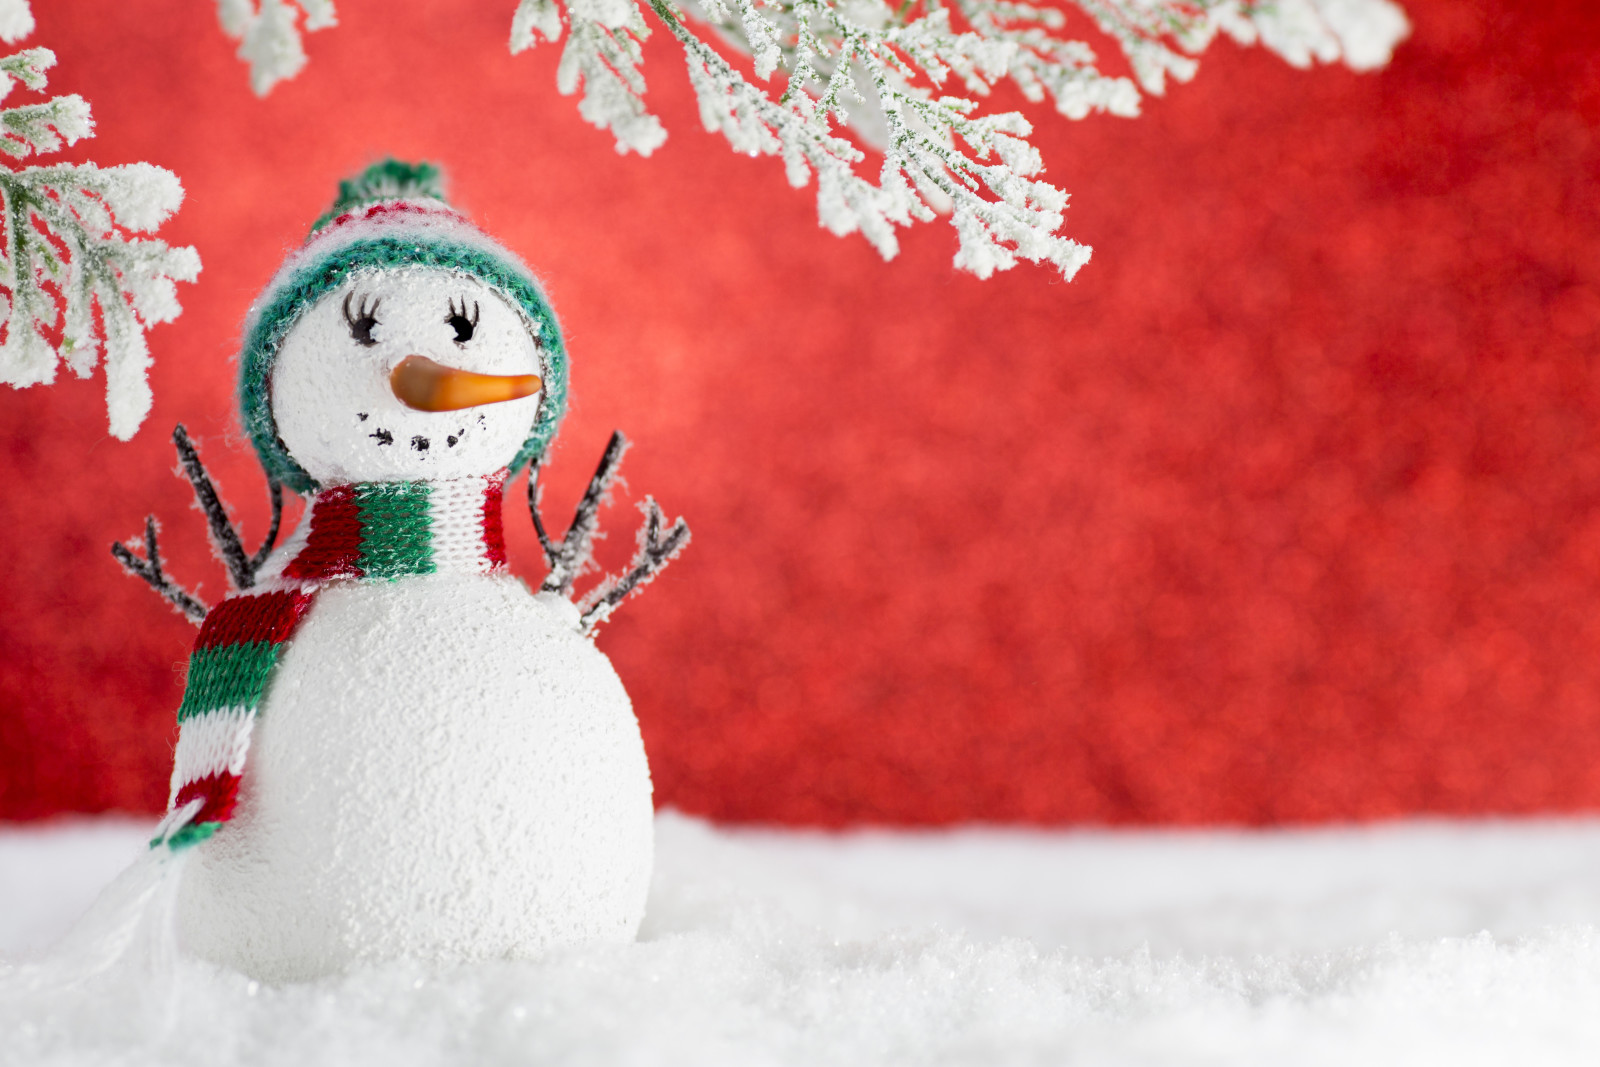 tuyết, Năm mới, Giáng sinh, trang trí, Chúc mừng, mùa đông, Giáng sinh, người tuyết